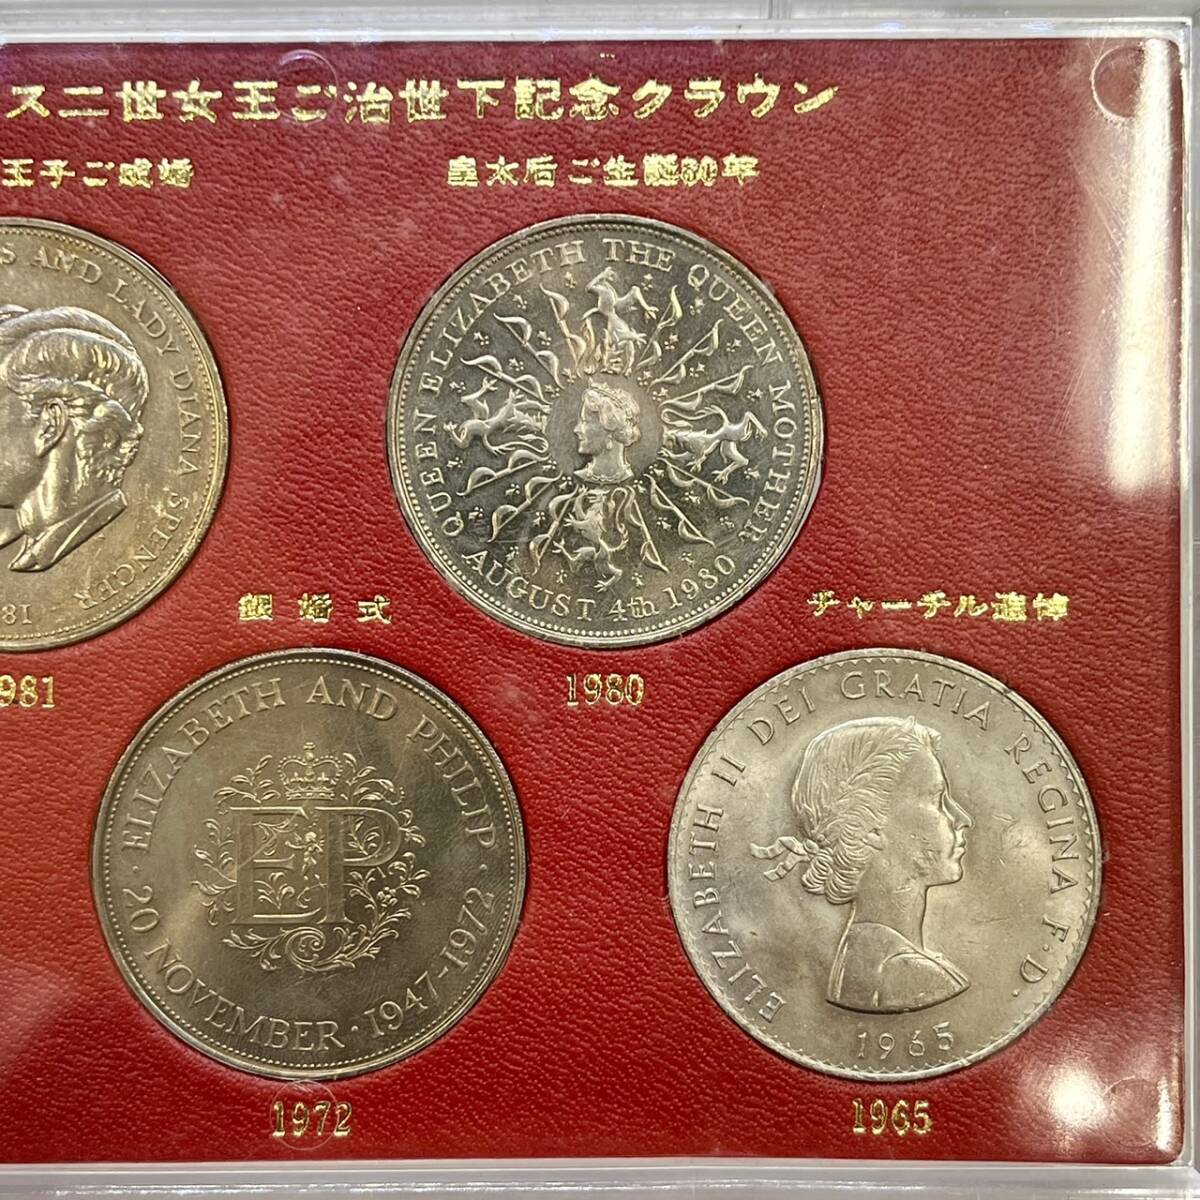 【DHS3017AT】エリザベス2世女王ご治世下記念クラウン ケース入り記念硬貨5枚セット 当時物 コレクションの画像4